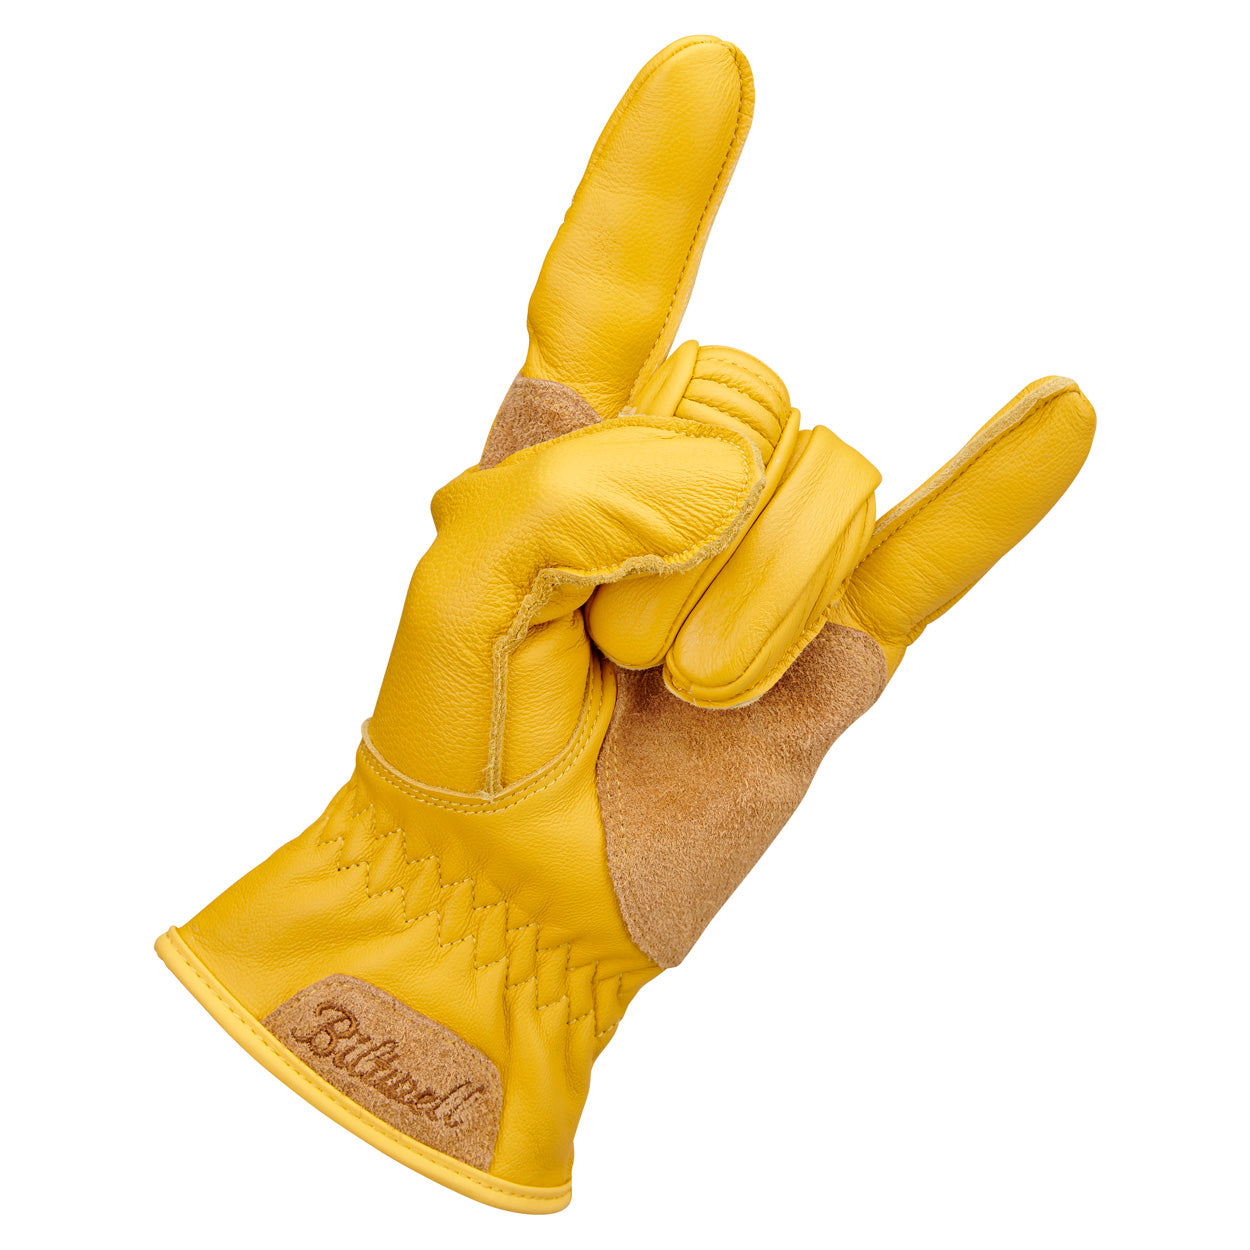 Biltwell - Work Gloves 2.0 - Gold